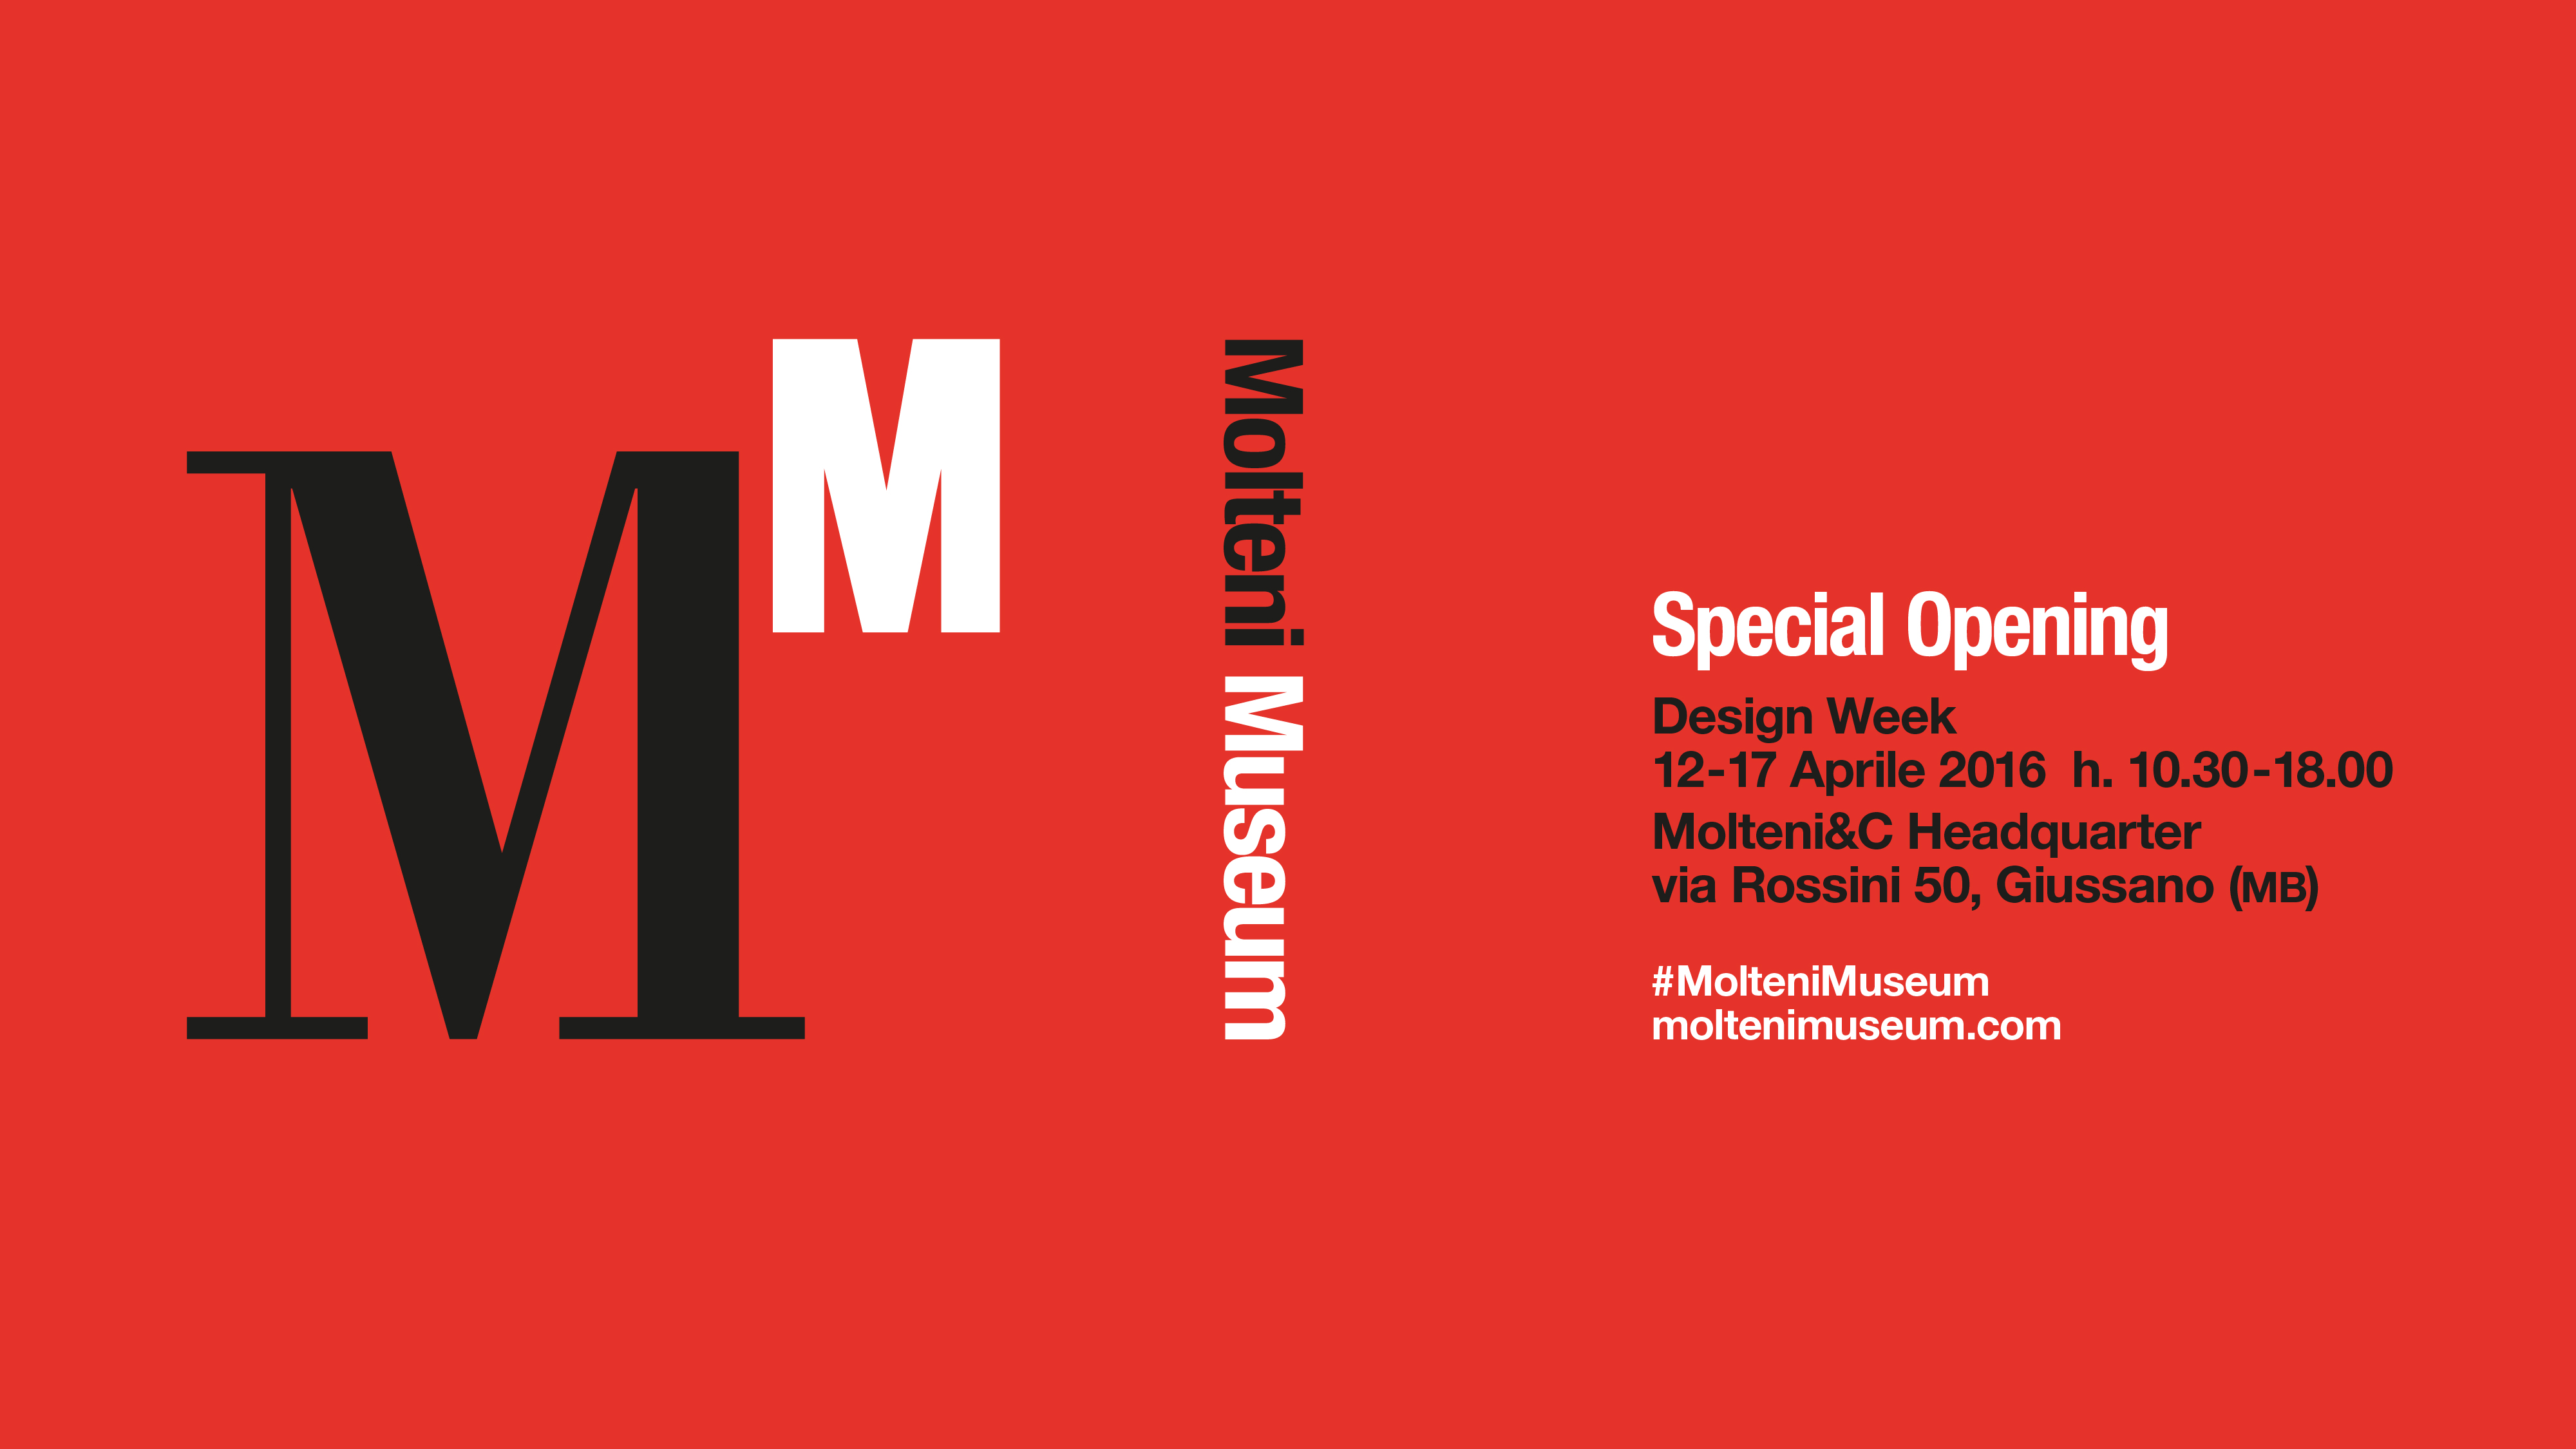 Molteni Museum special opening – Milan Design week